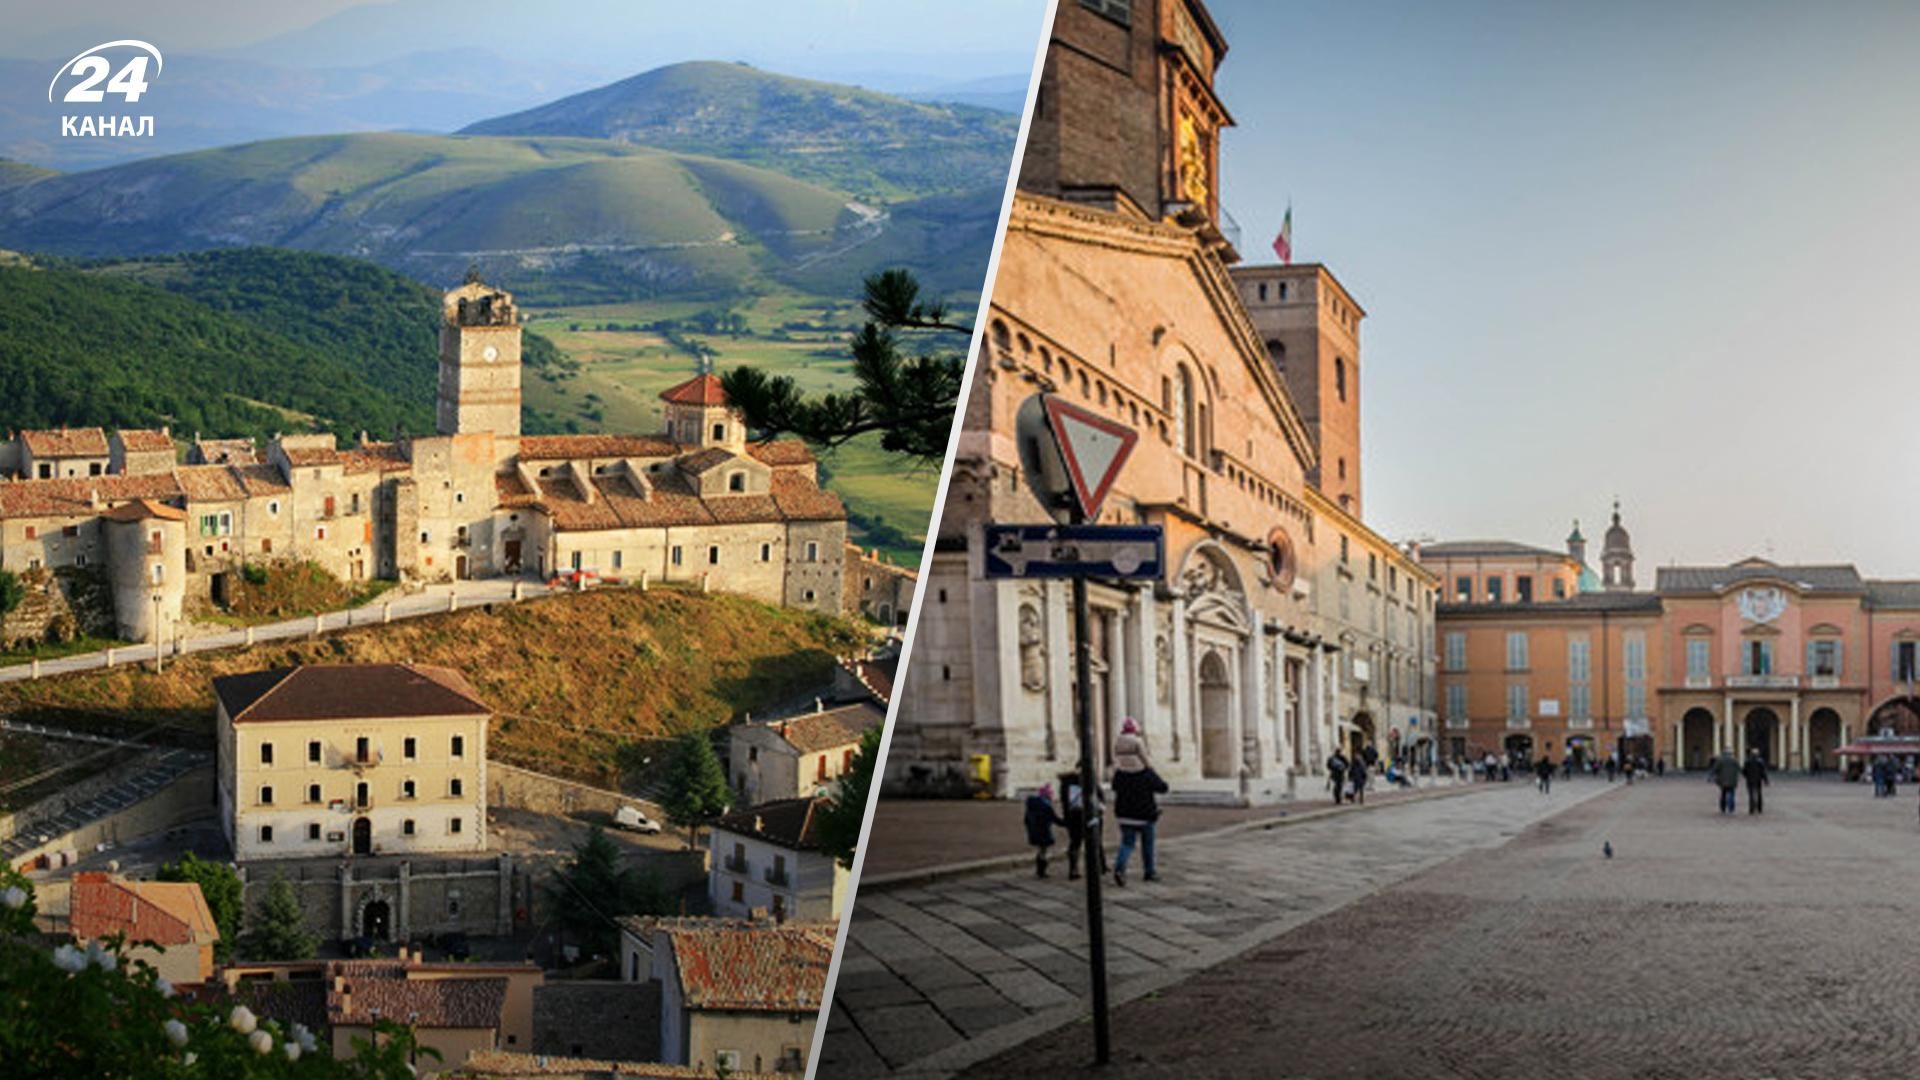 25 итальянских муниципалитетов предлагают дома по 1 евро - Недвижимость